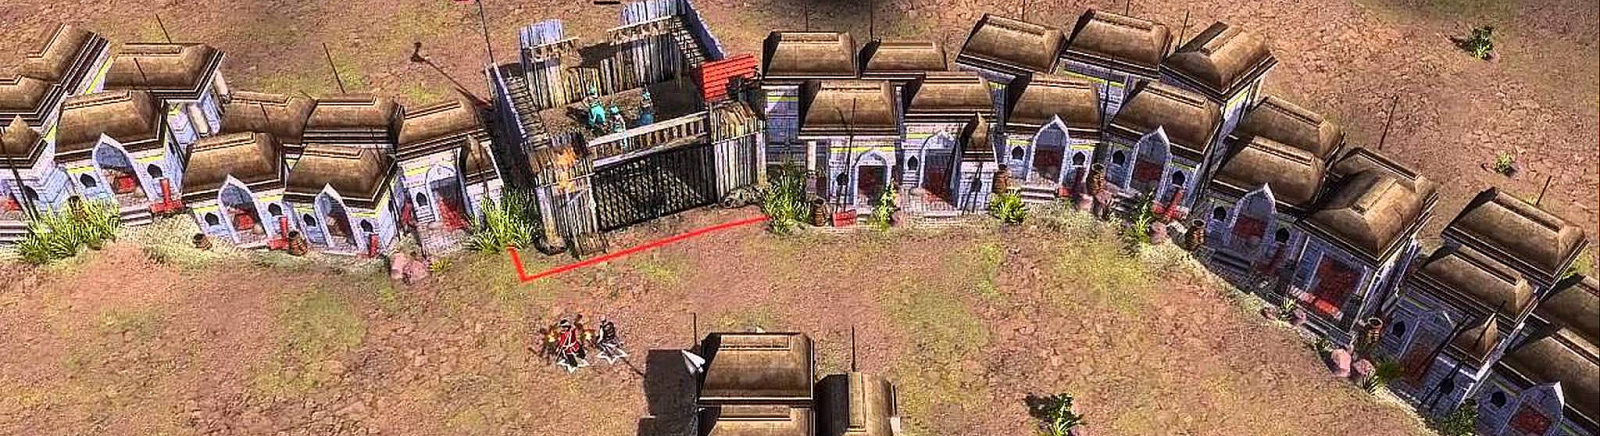 Дата выхода Age of Empires 3: The Asian Dynasties  на PC и Mac в России и во всем мире